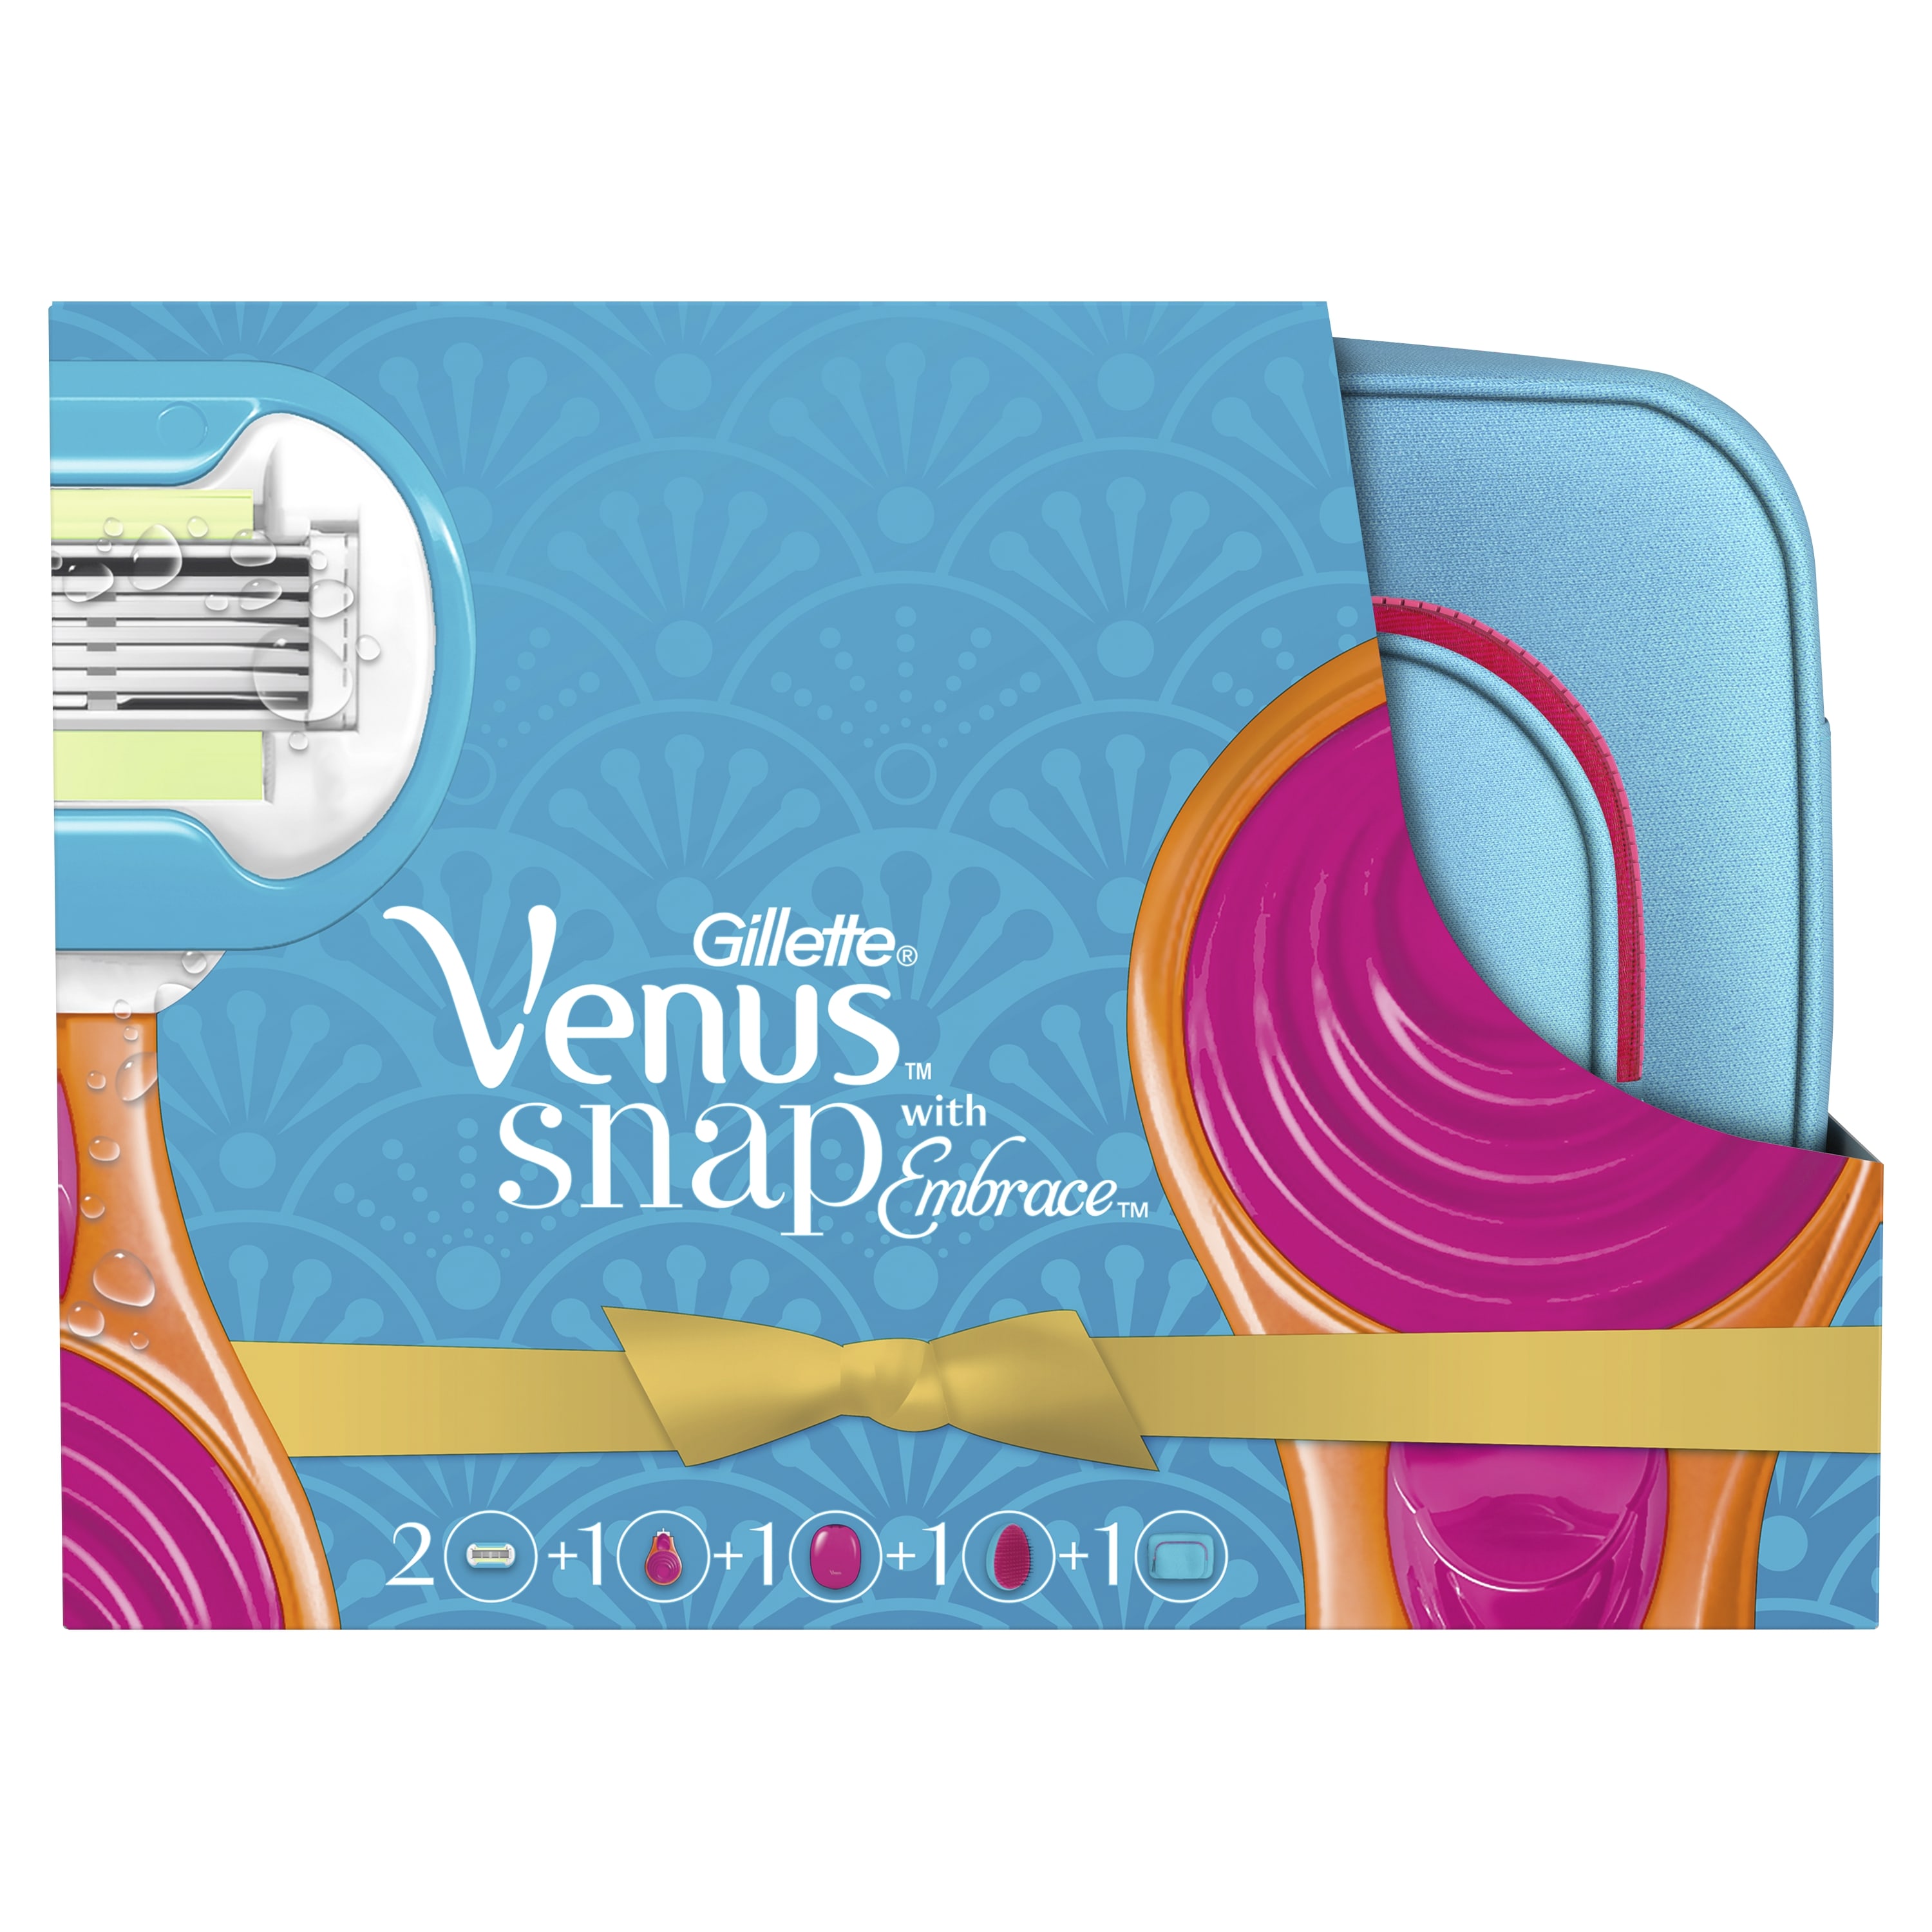 Подарочный набор VENUS Snap Embrace бритва с 1 сменной кассетой+косметичка+расческа бритва мини pearlmax confidence женская со сменной кассетой 3 лезвия совместима с venus